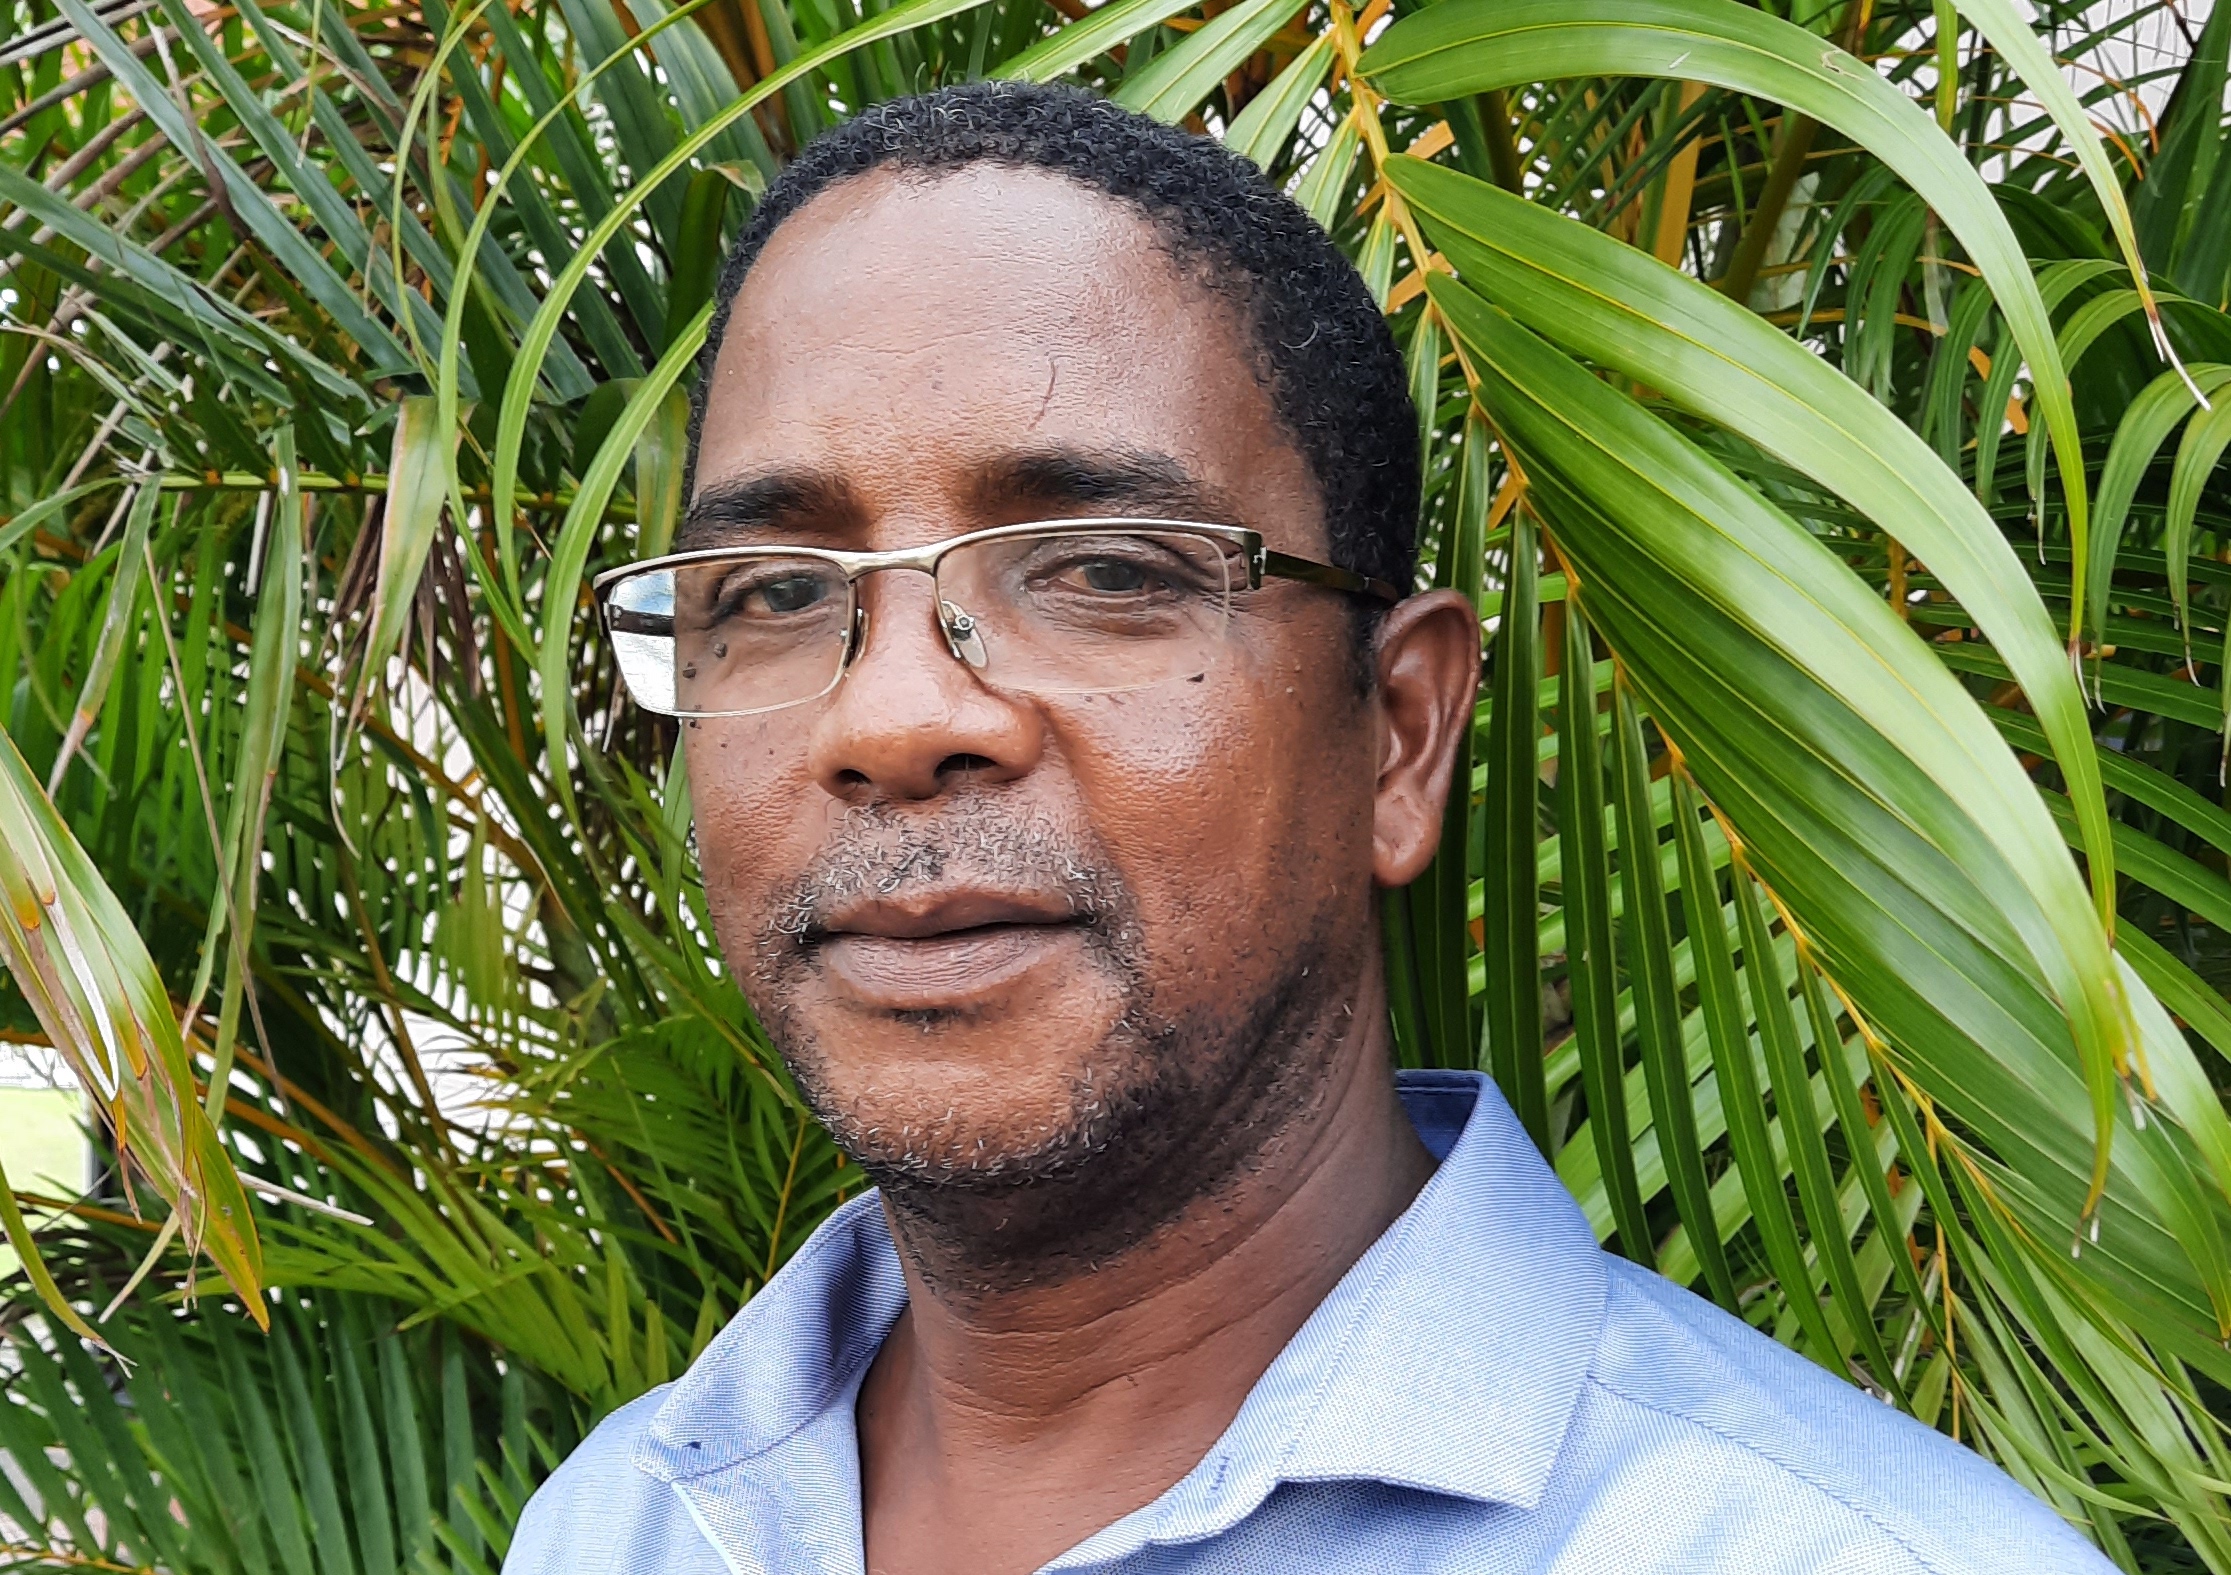     José Maurice est le nouveau président de la Chambre d'agriculture de Martinique

